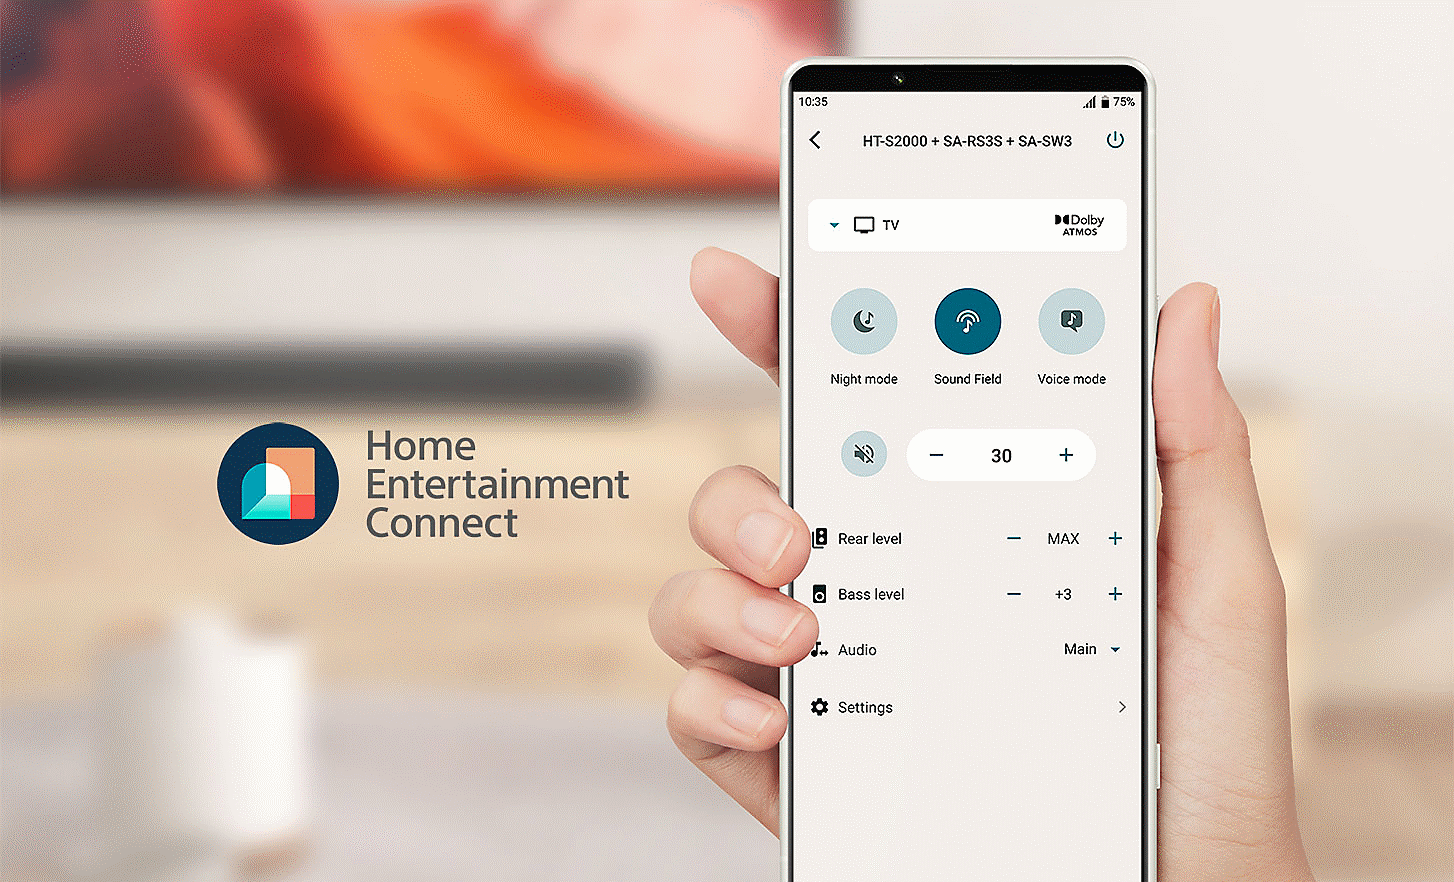 Imagen de un teléfono móvil en una mano con un menú de configuración en pantalla y un logotipo de Home Entertainment Connect aparece a la izquierda